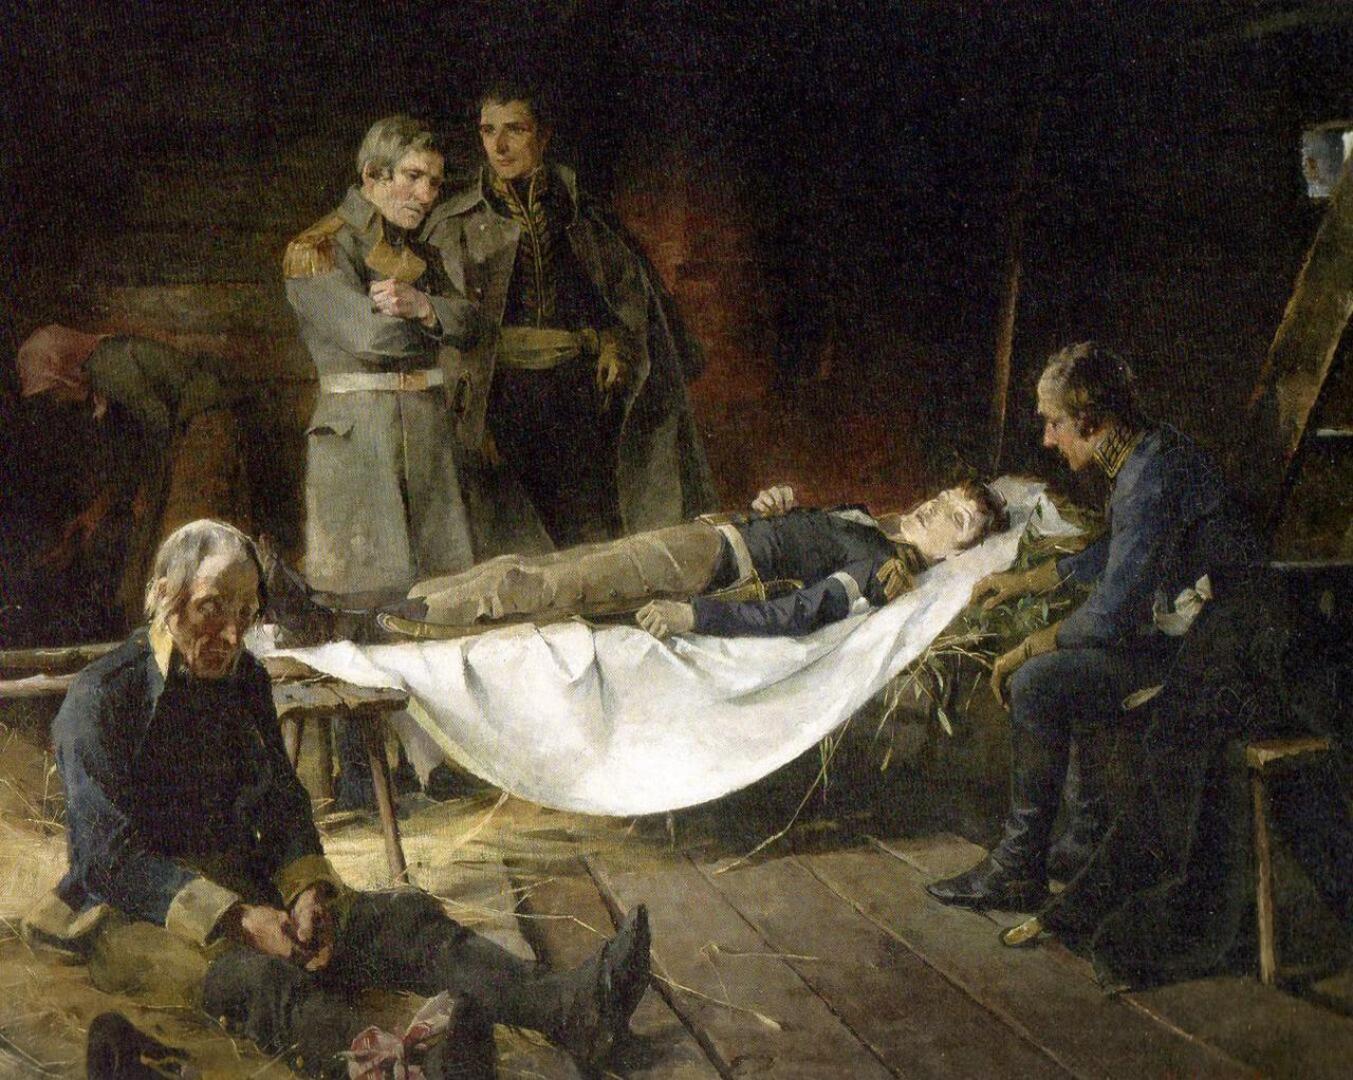 Wilhelm von Schwerin kuolema, Helene Schjerfbeck, v 1886, öljy, 90x117.5 